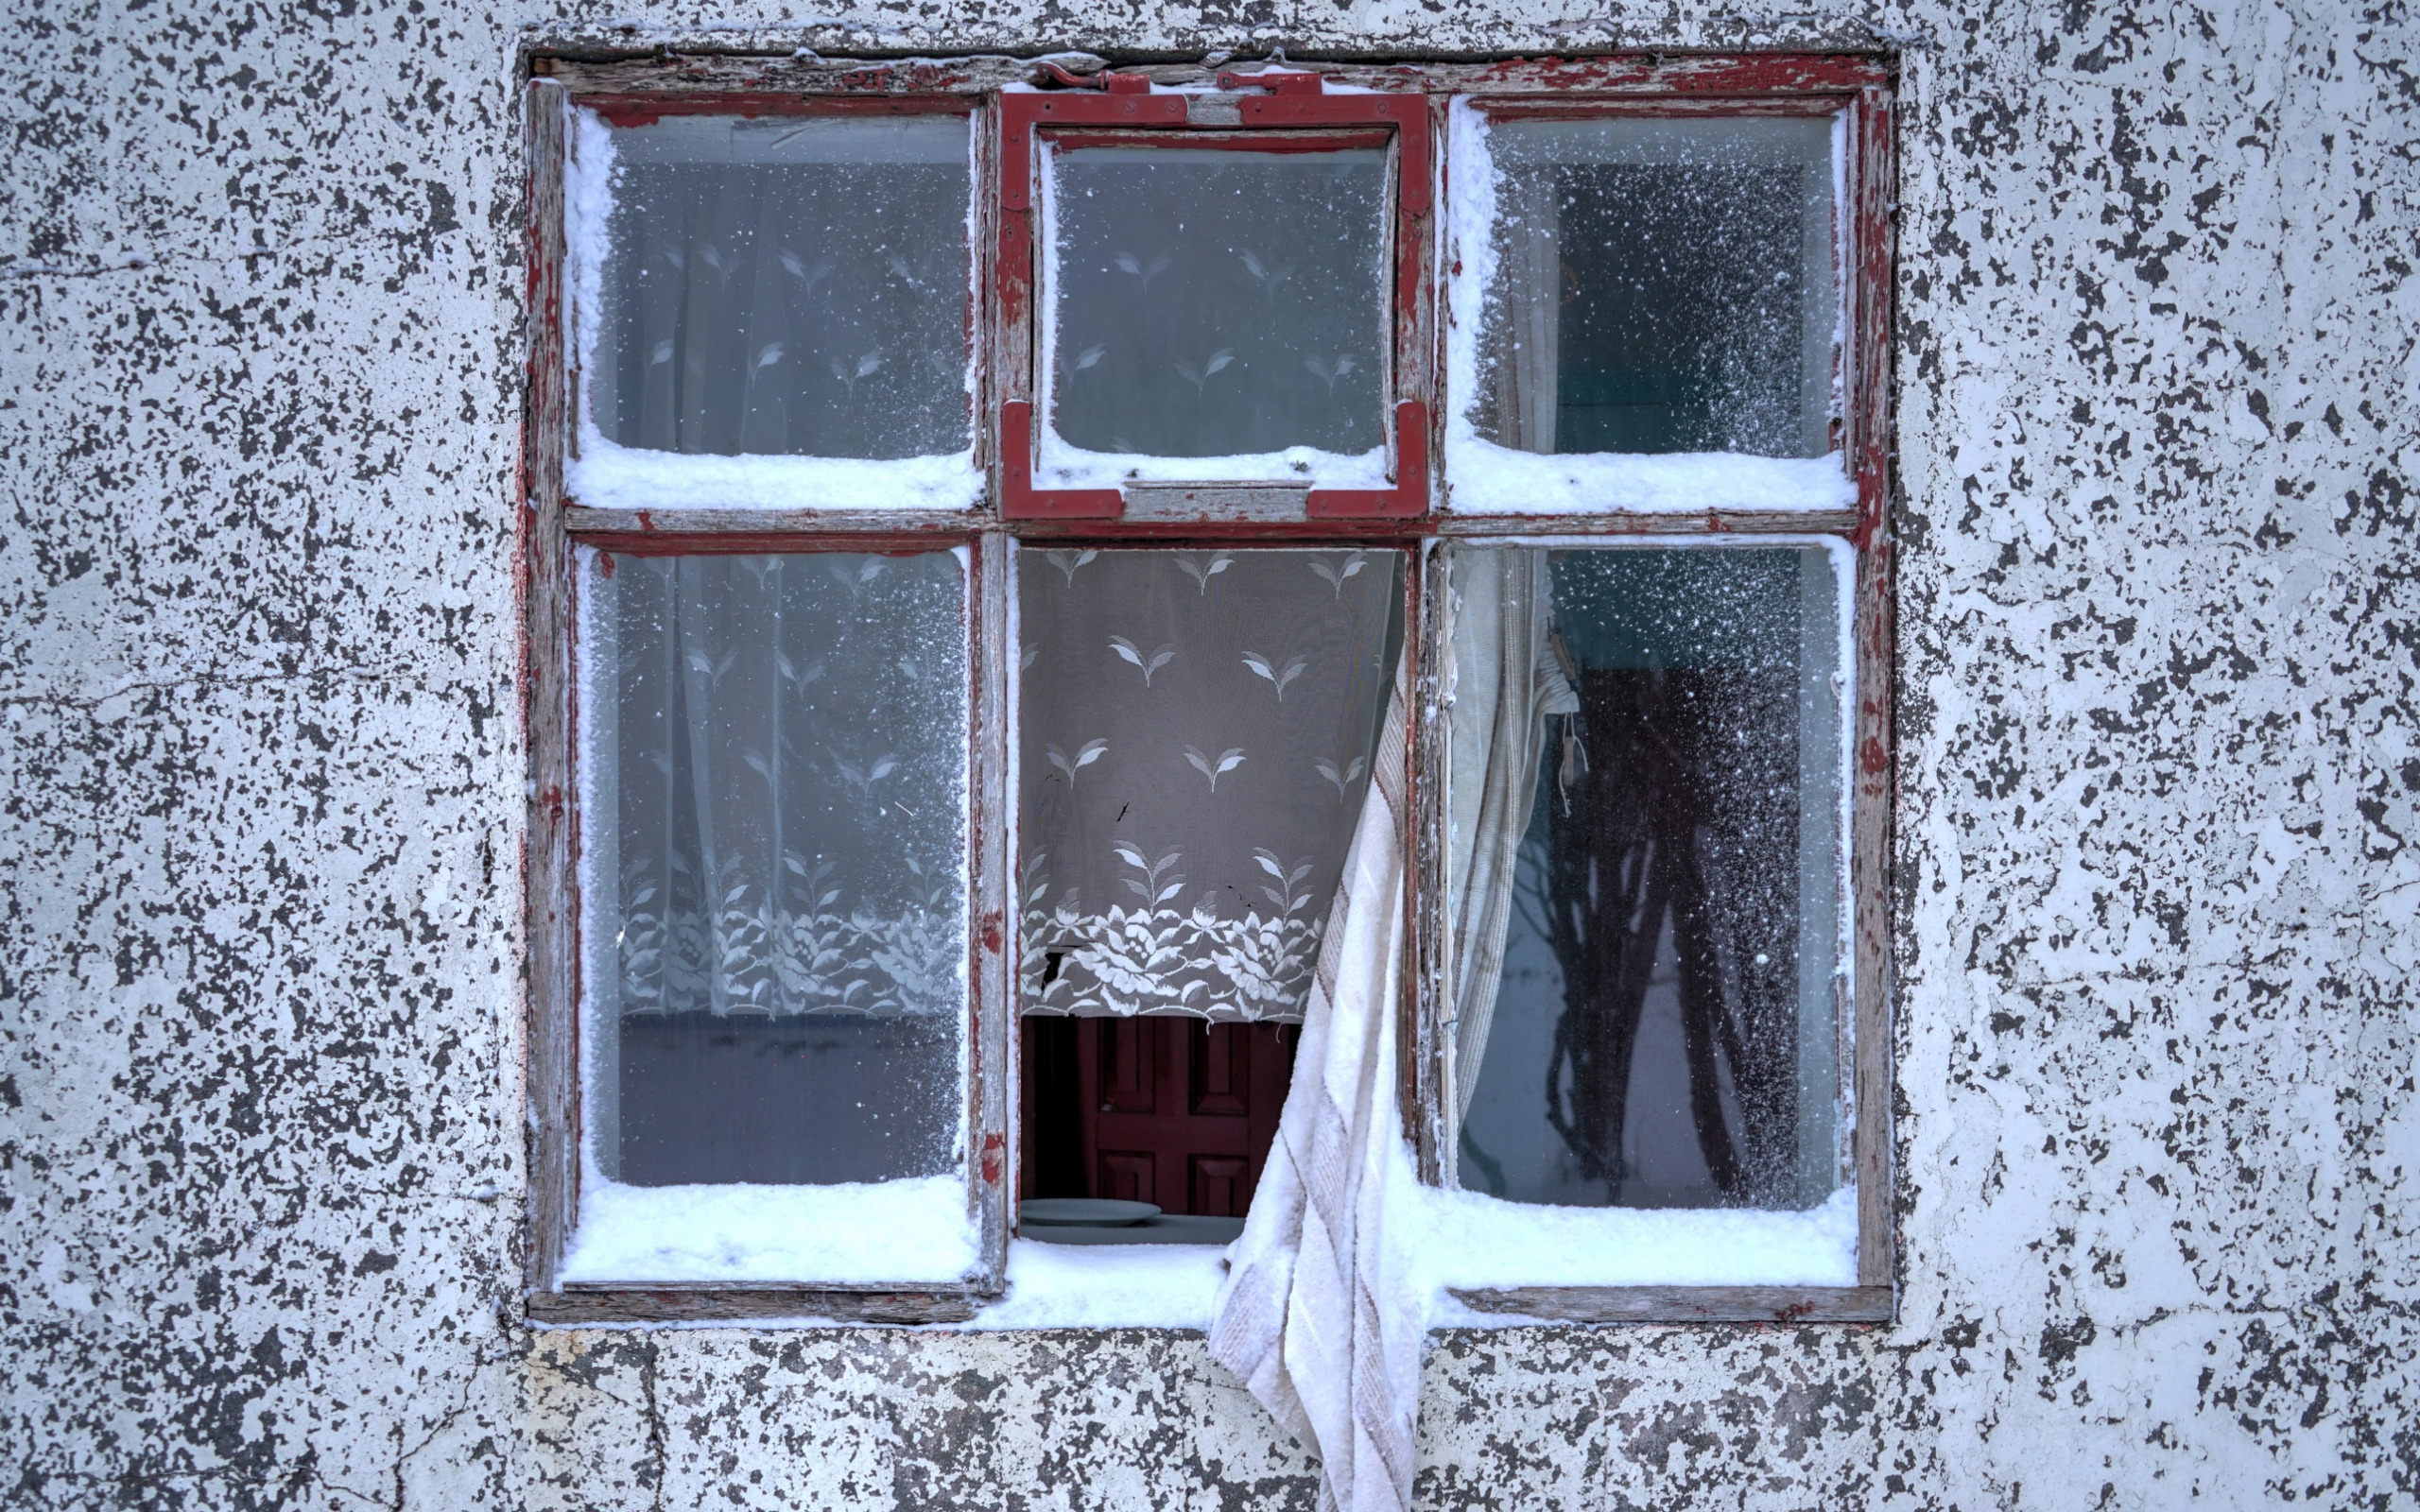 Оставил дома окно открытым. Открытое окно вид с улицы. Зимнее окно с занавесками. Стена дома с окнами. Занавески в окне снаружи.